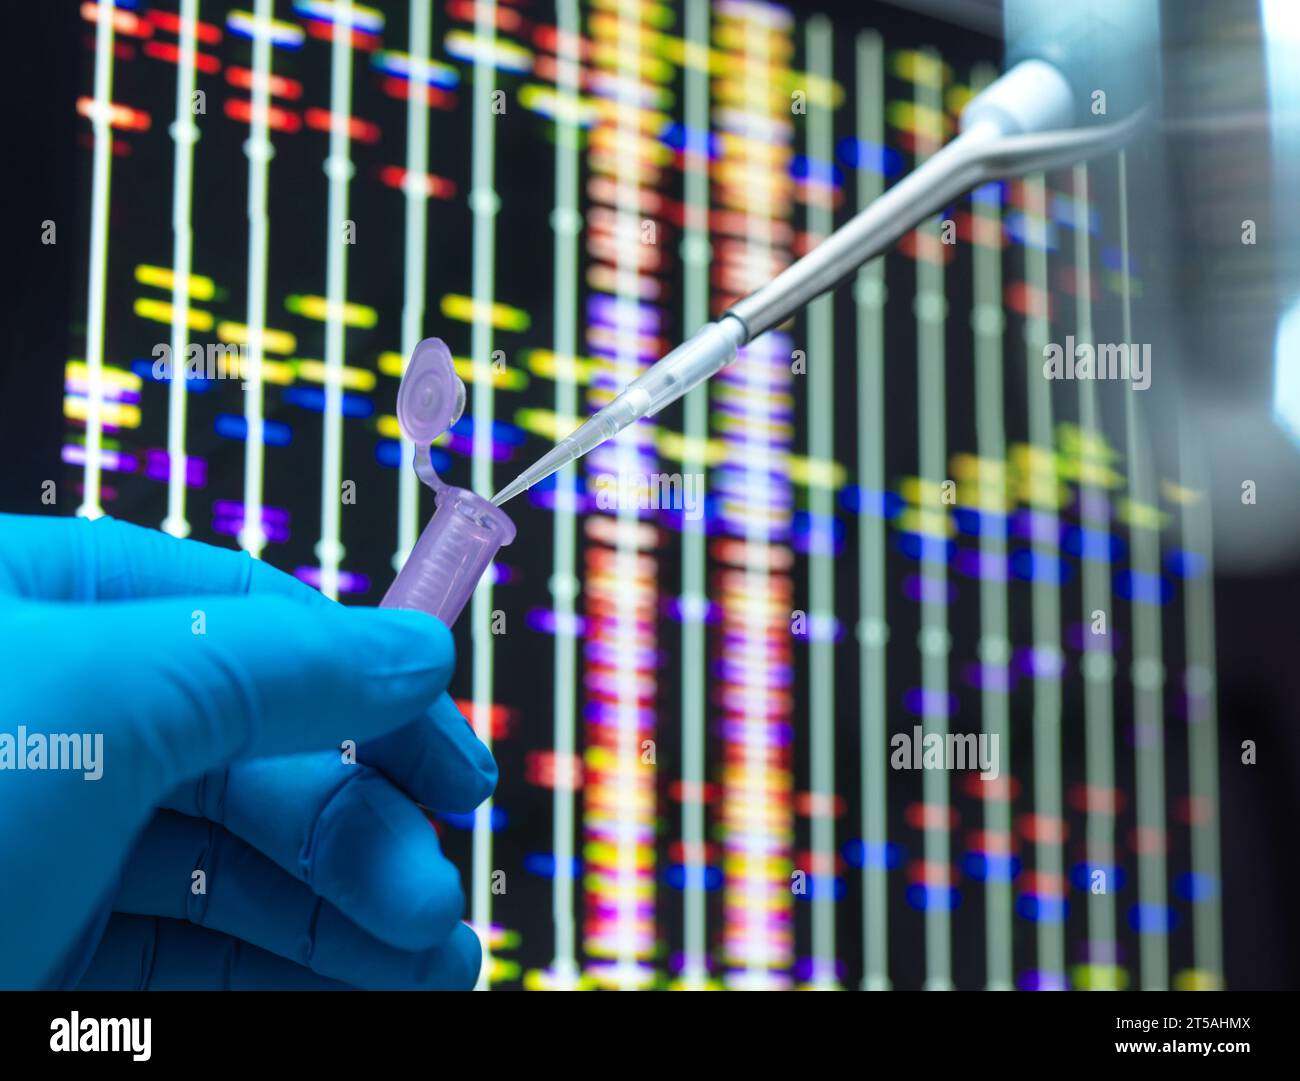 Tests génétiques, image conceptuelle Banque D'Images